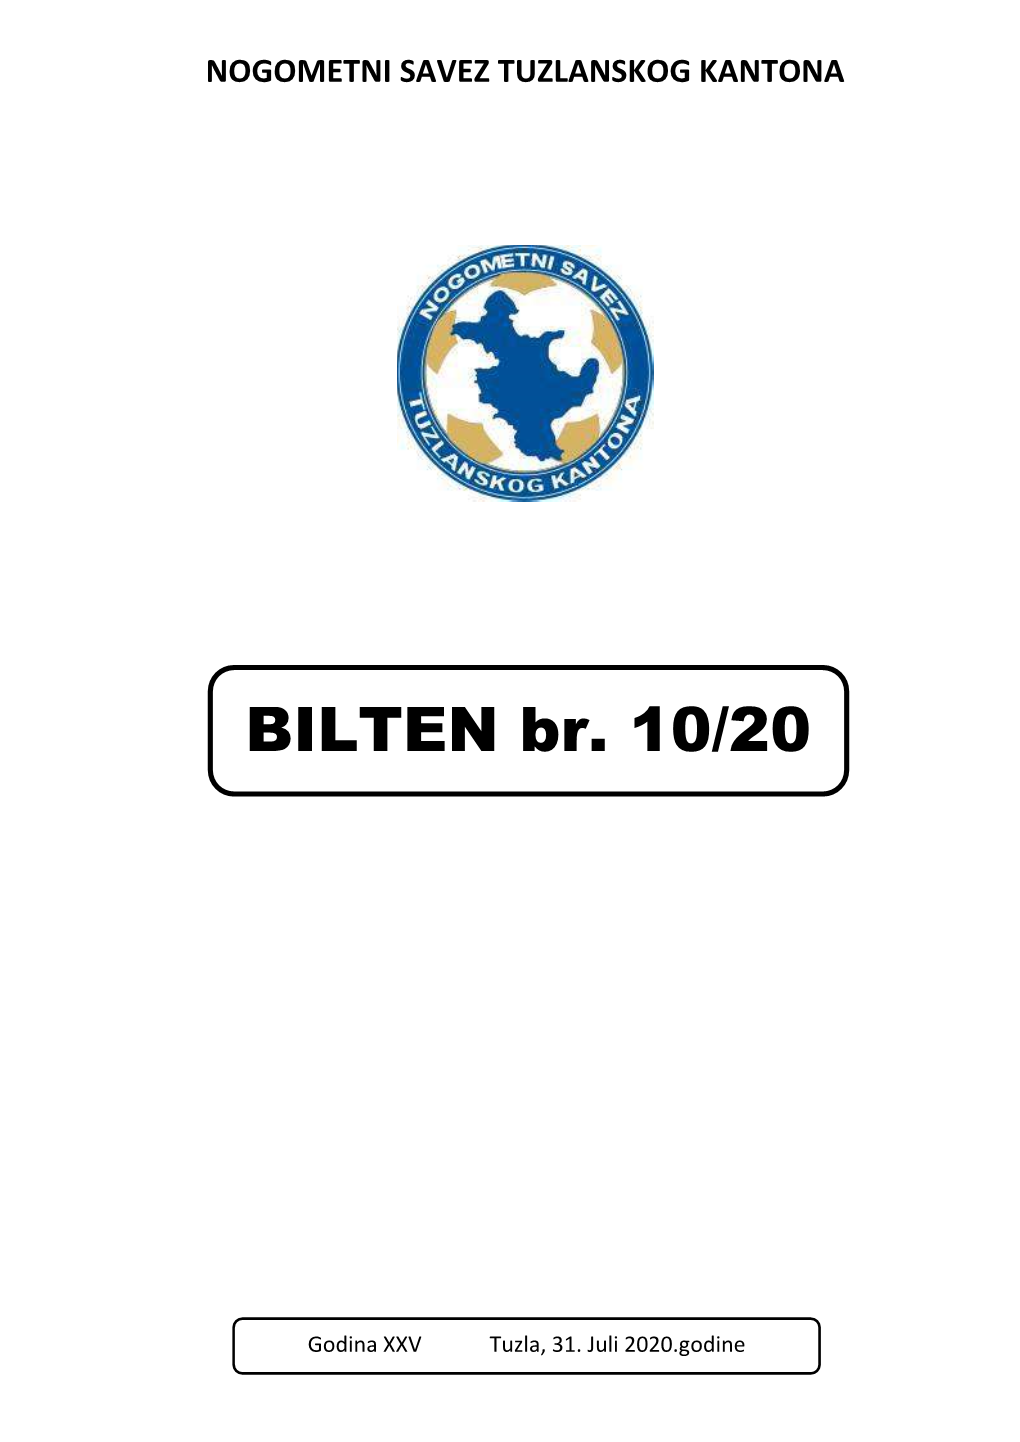 BILTEN Br. 10/20